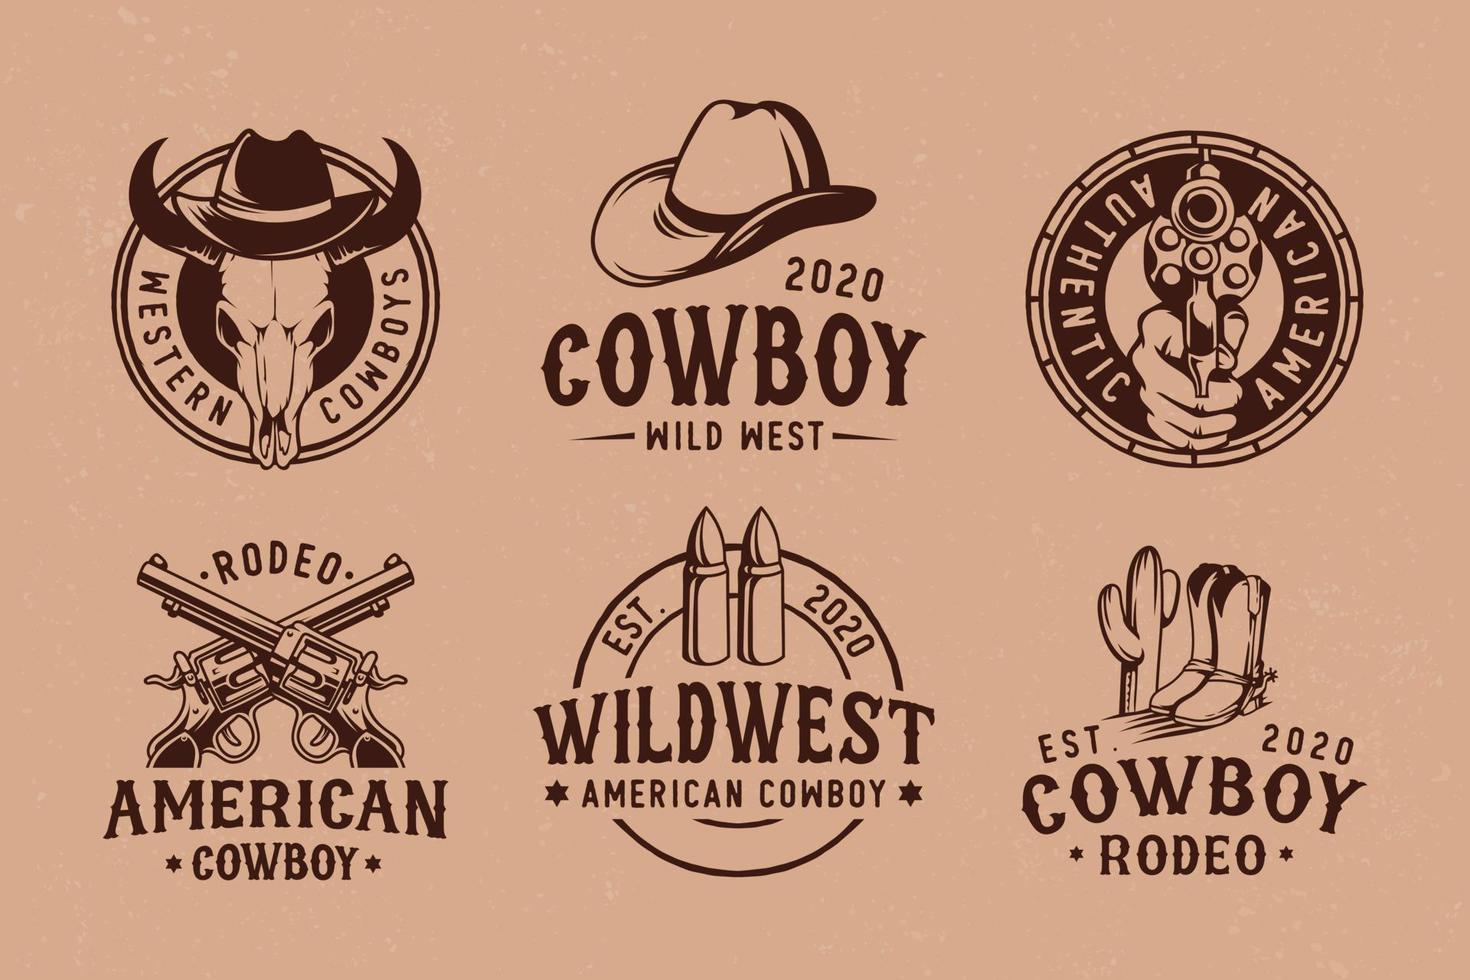 Cowboy-Rodeo-Show-Set von Vektor-Vintage-Emblemen, Etiketten, Abzeichen und Logos im monochromen Stil isoliert vektor